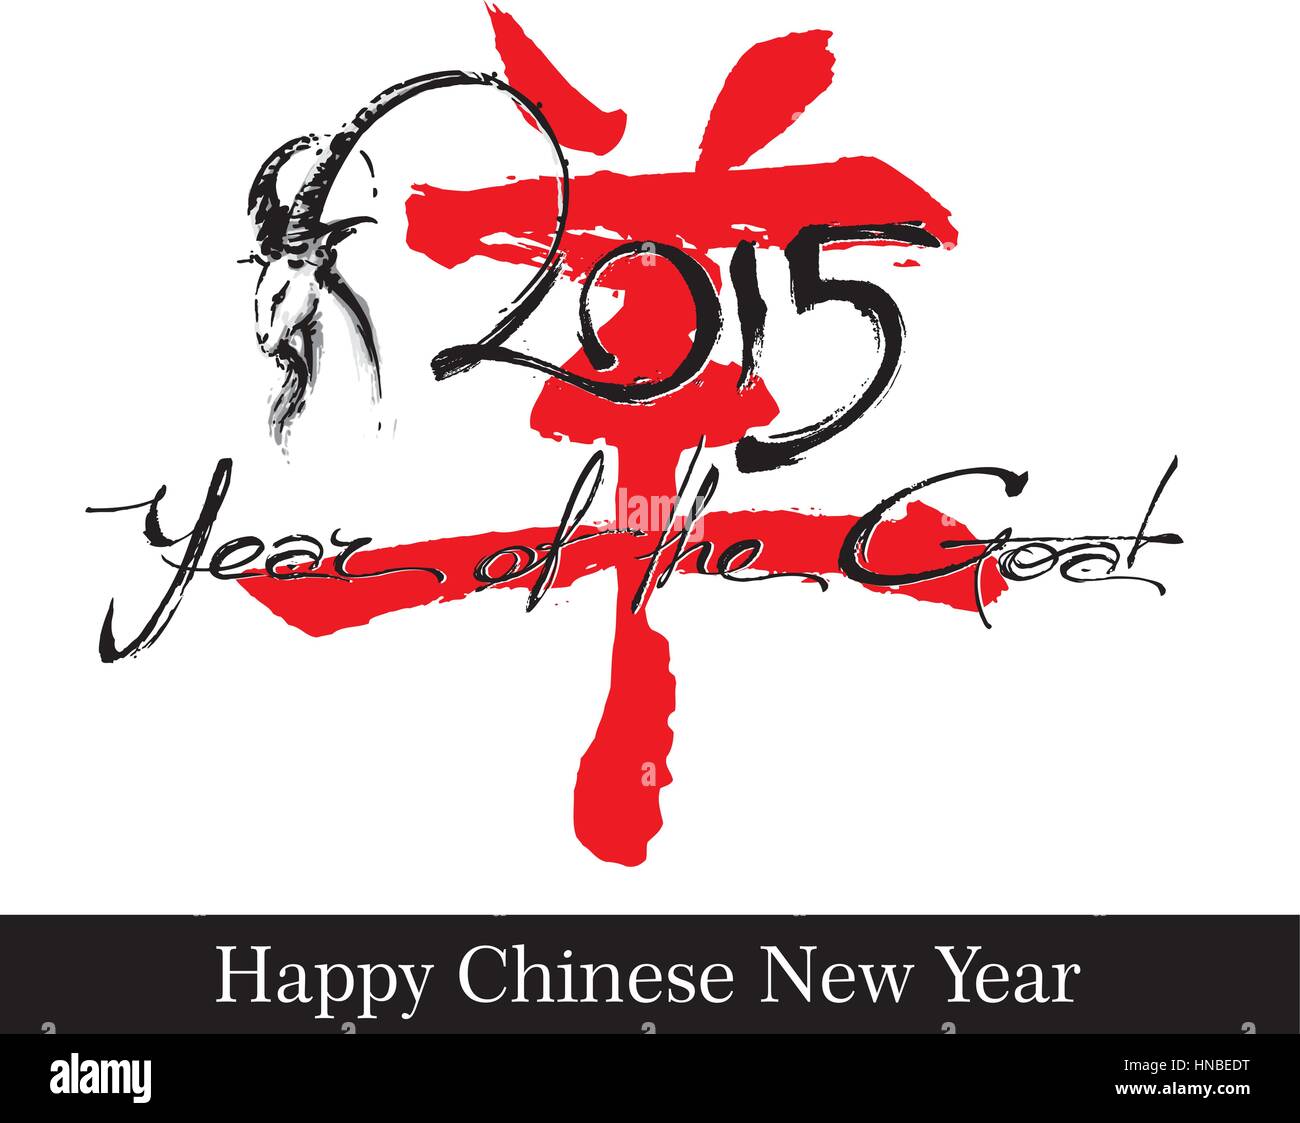 Illustrazione Vettoriale di disegnato a mano di capra e la scrittura di testo "2015 anno della capra ' contro un calligraphically cinese disegnato logogramma per "capra". Illustrazione Vettoriale